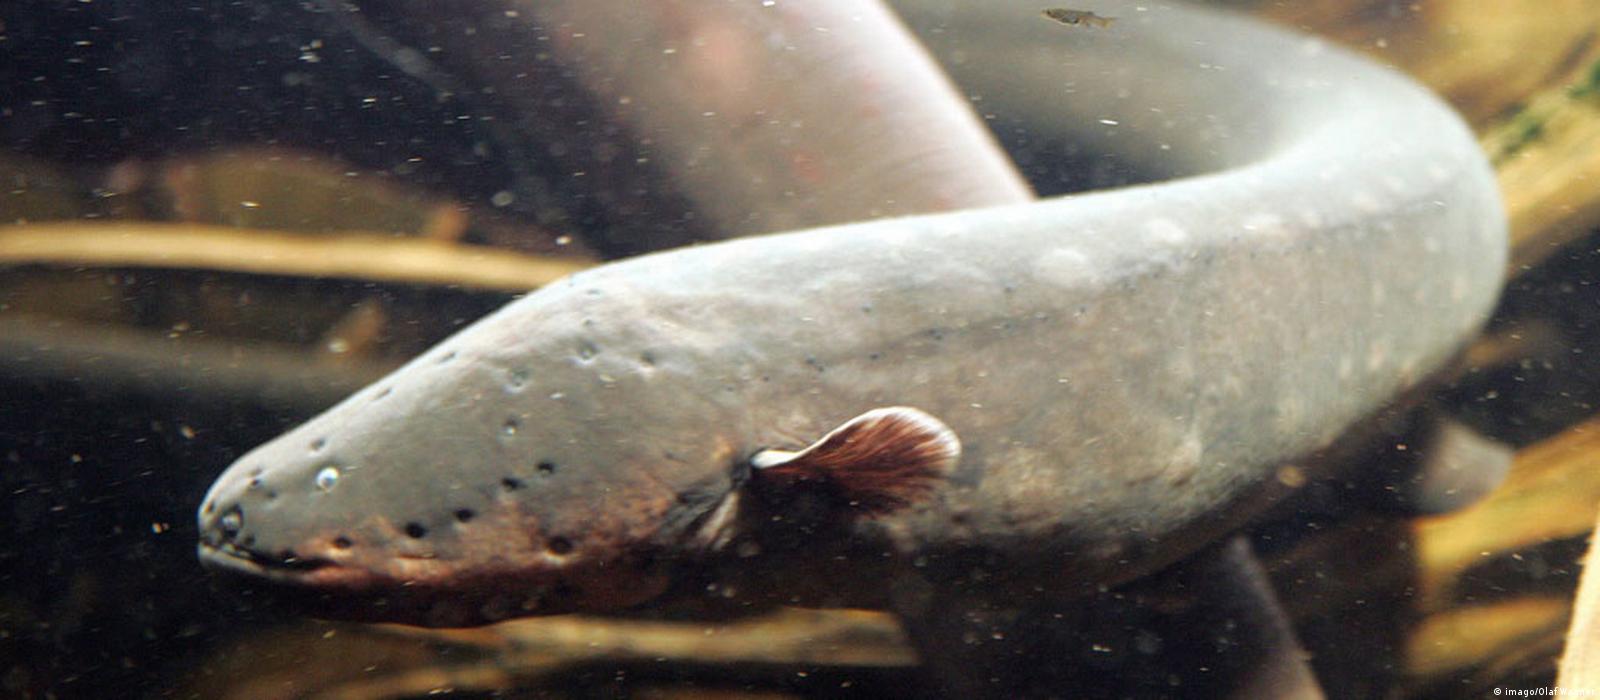 Electric eels deliver taser-like shocks – DW – 09/14/2017